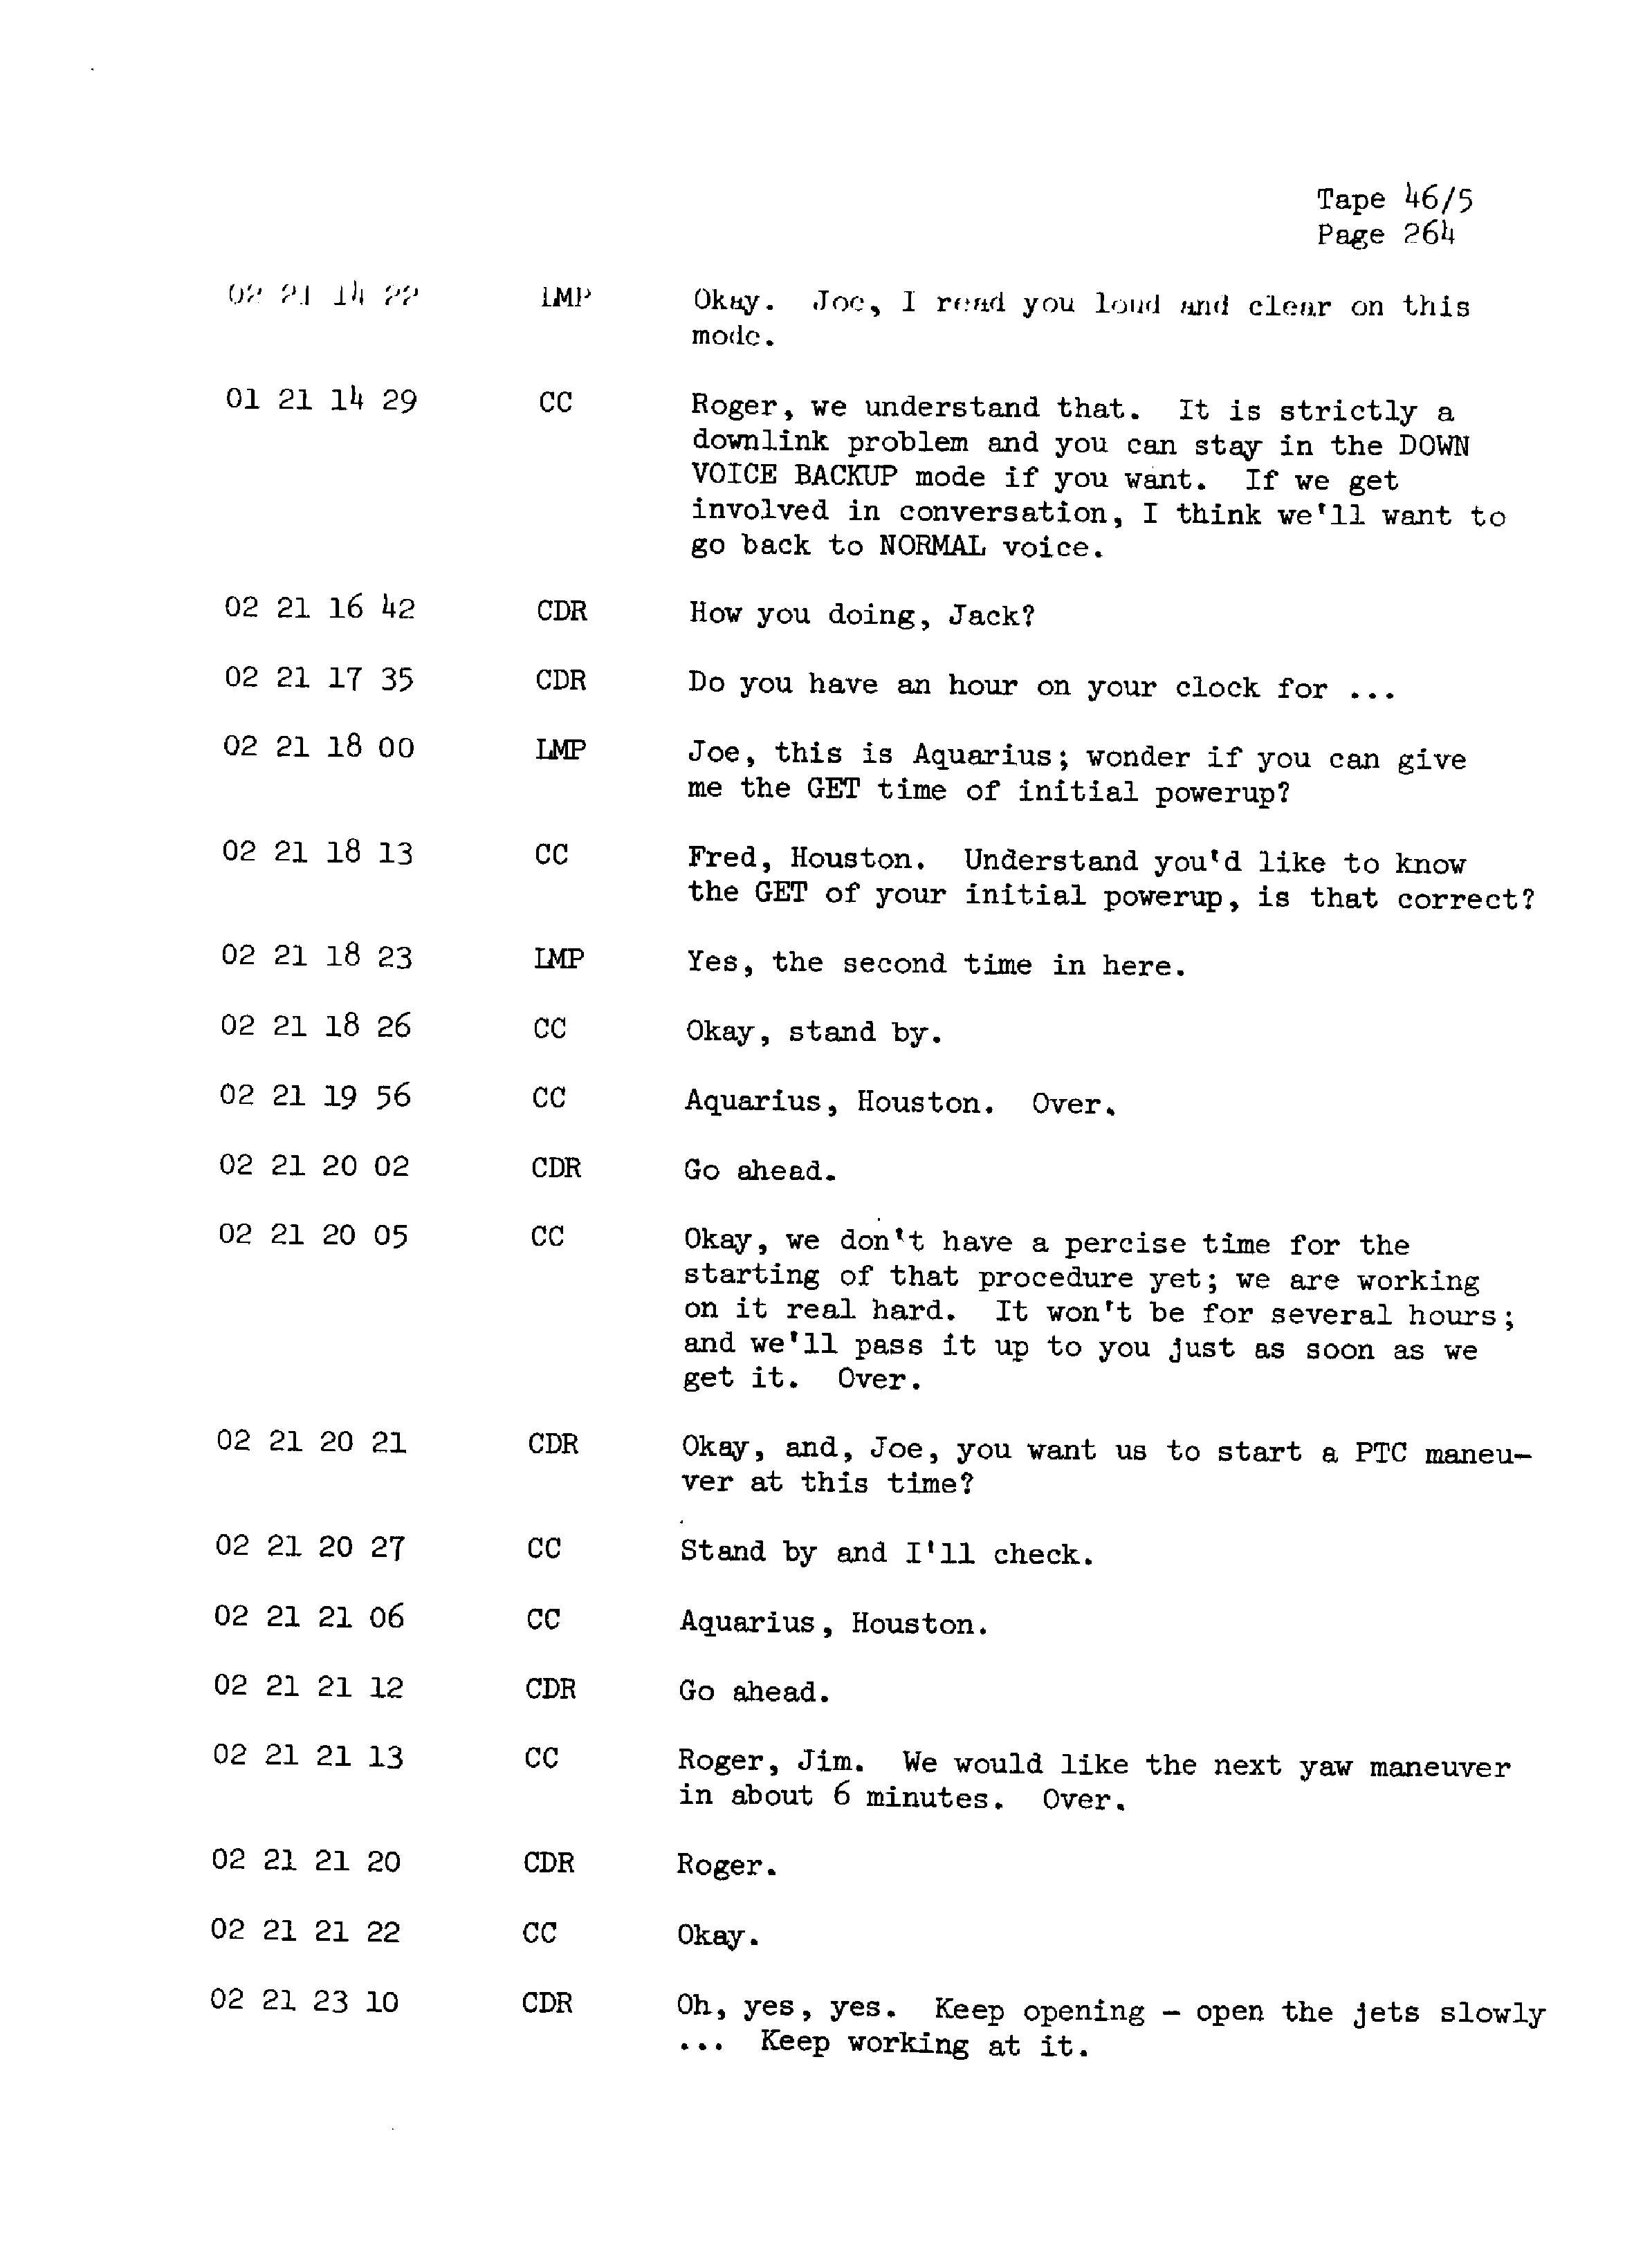 Page 271 of Apollo 13’s original transcript